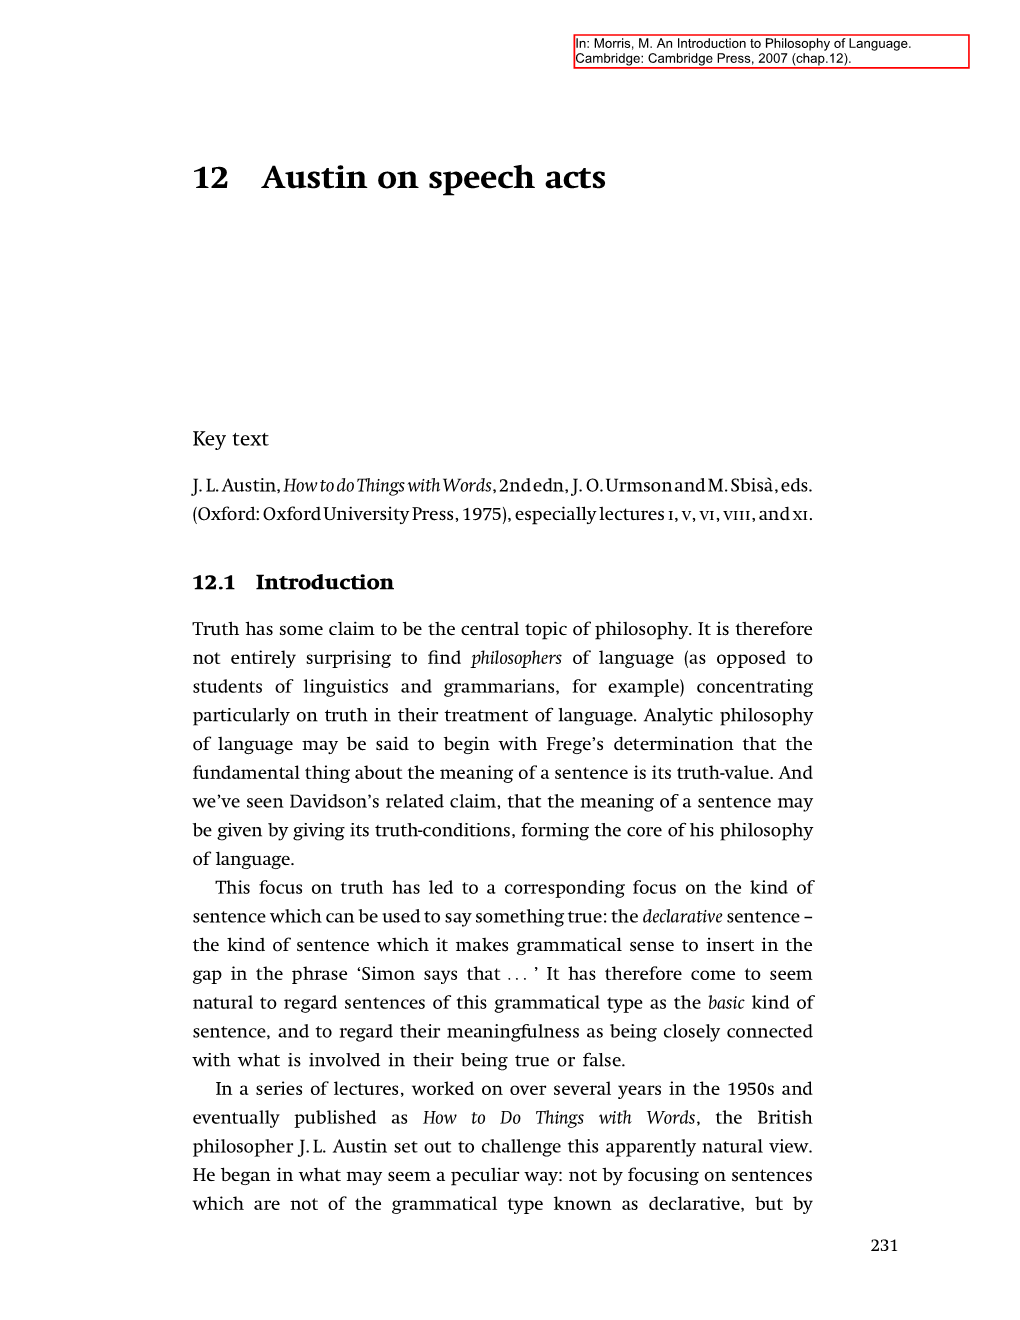 12 Austin on Speech Acts